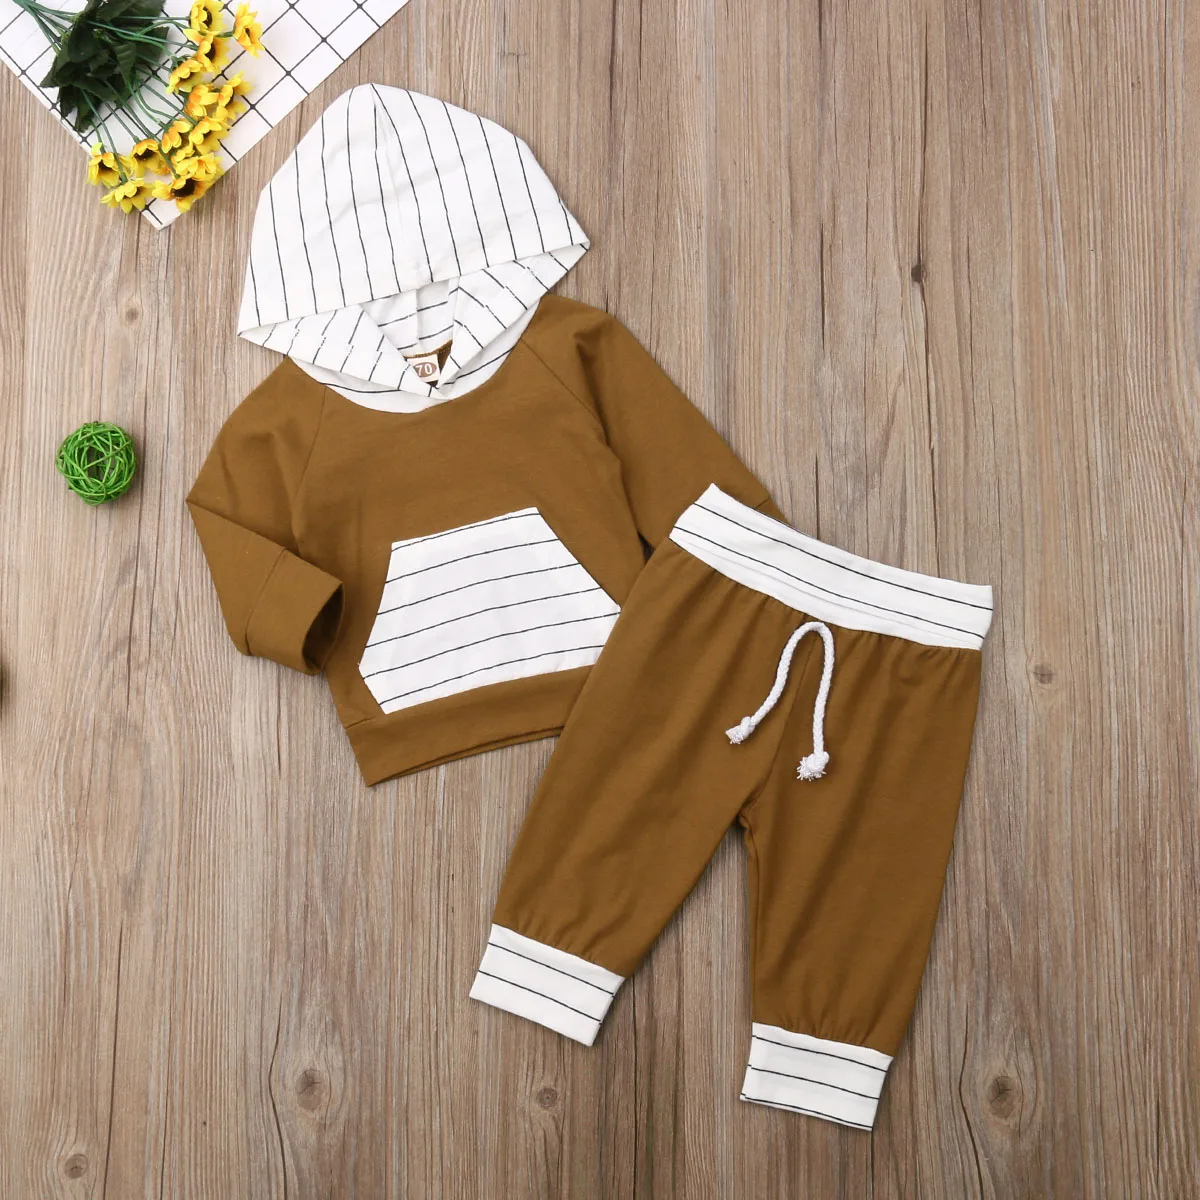 Emmaaby/Одежда для новорожденных мальчиков и девочек от 0 до 24 месяцев, топы с капюшоном и длинными рукавами, длинные штаны, комплект из 2 предметов комплект осенней одежды